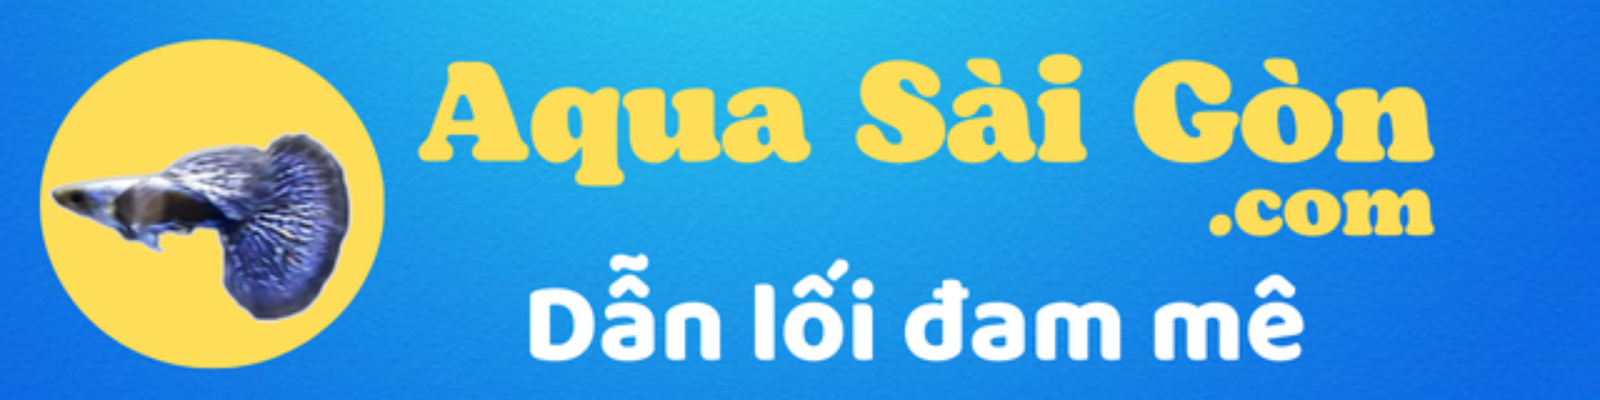 Thủy Sinh Aqua Sài Gòn | Dẫn lối đam mê 